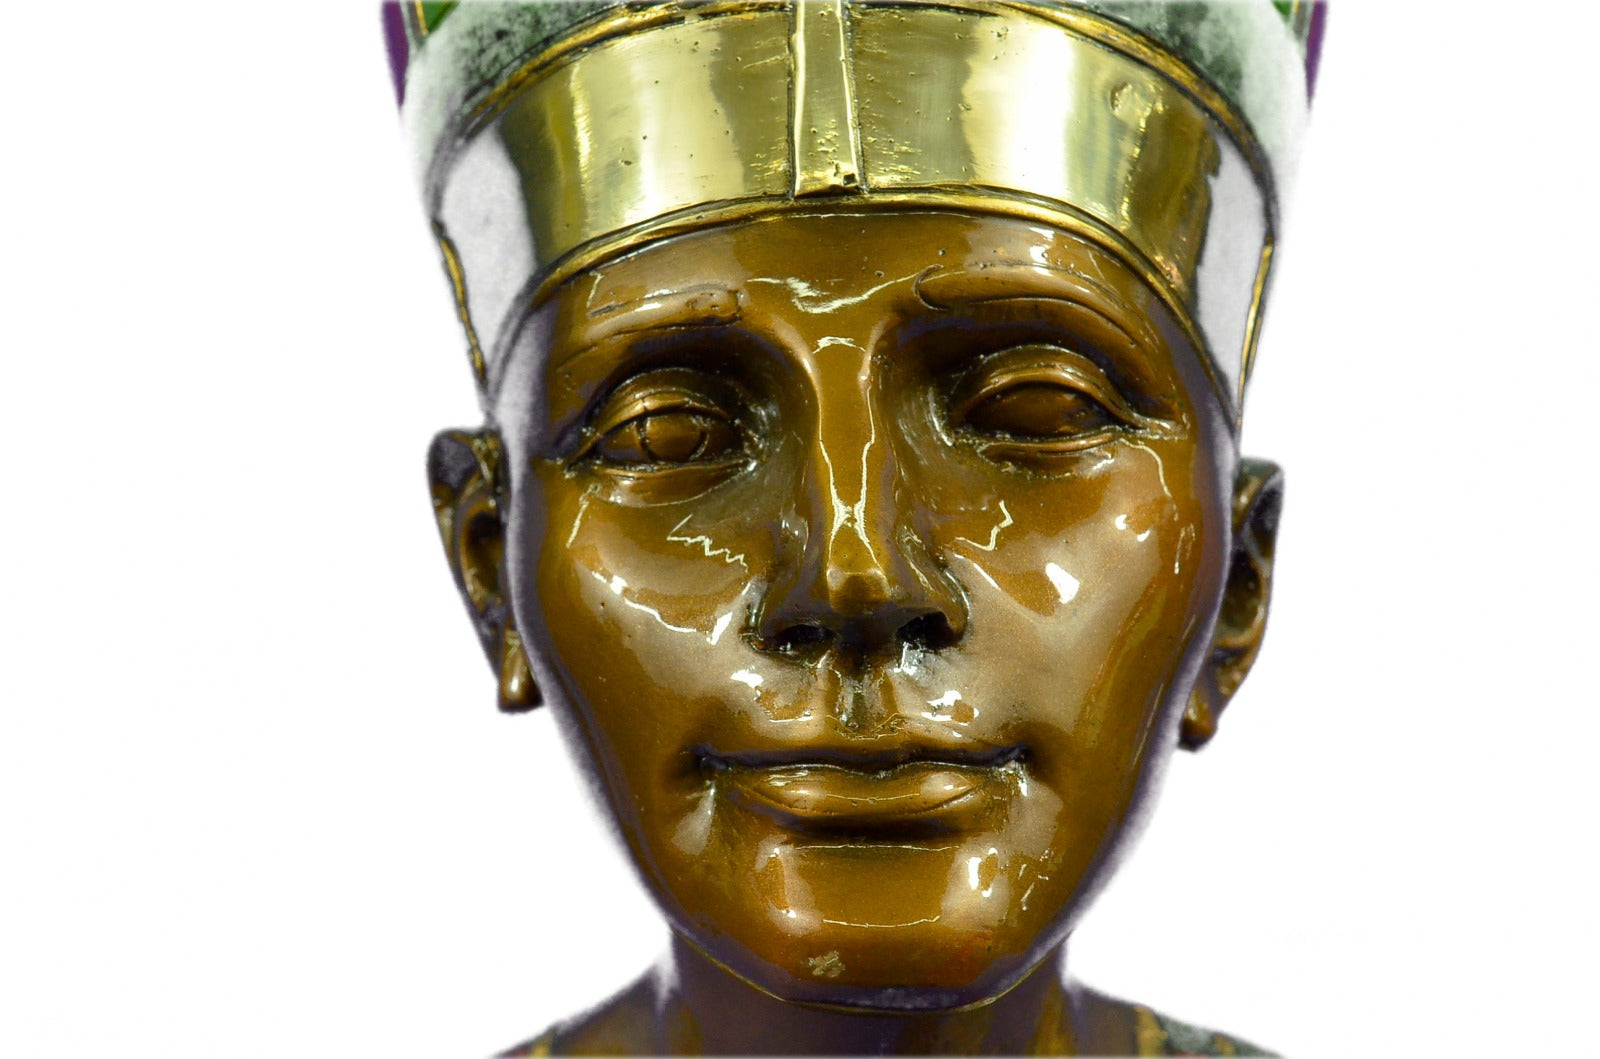 Handcrafted bronze sculpture SALE Wom Beauty Royal Nefertiti Queen Art